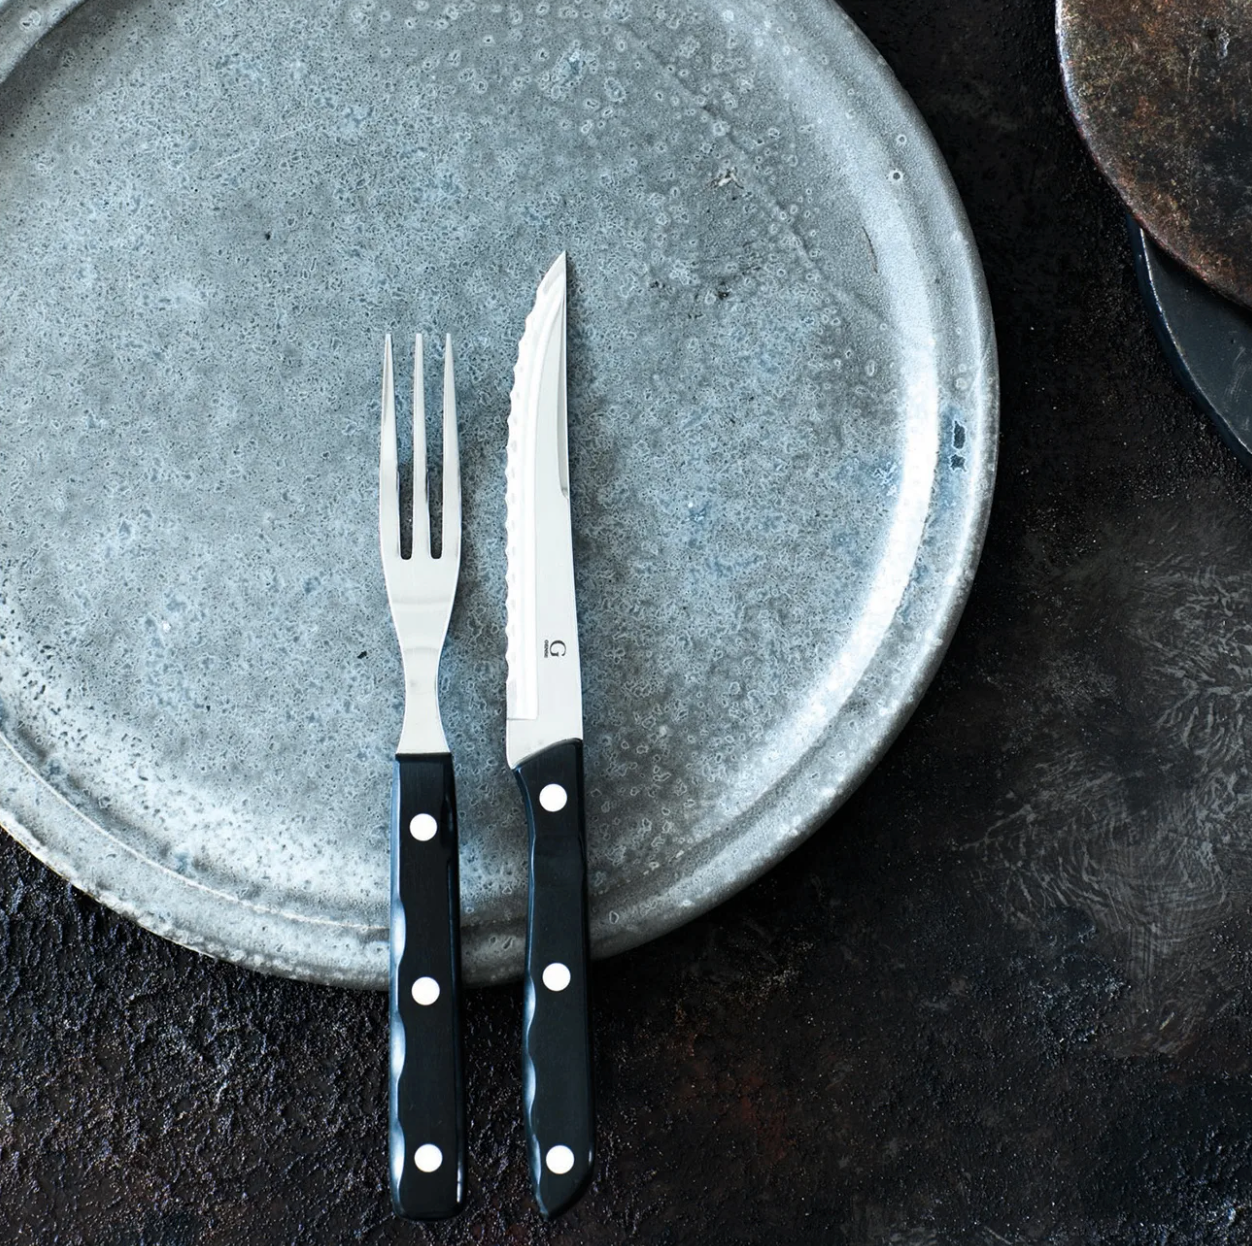 Rejäla grillbestick och vassa köttknivar – fina tips